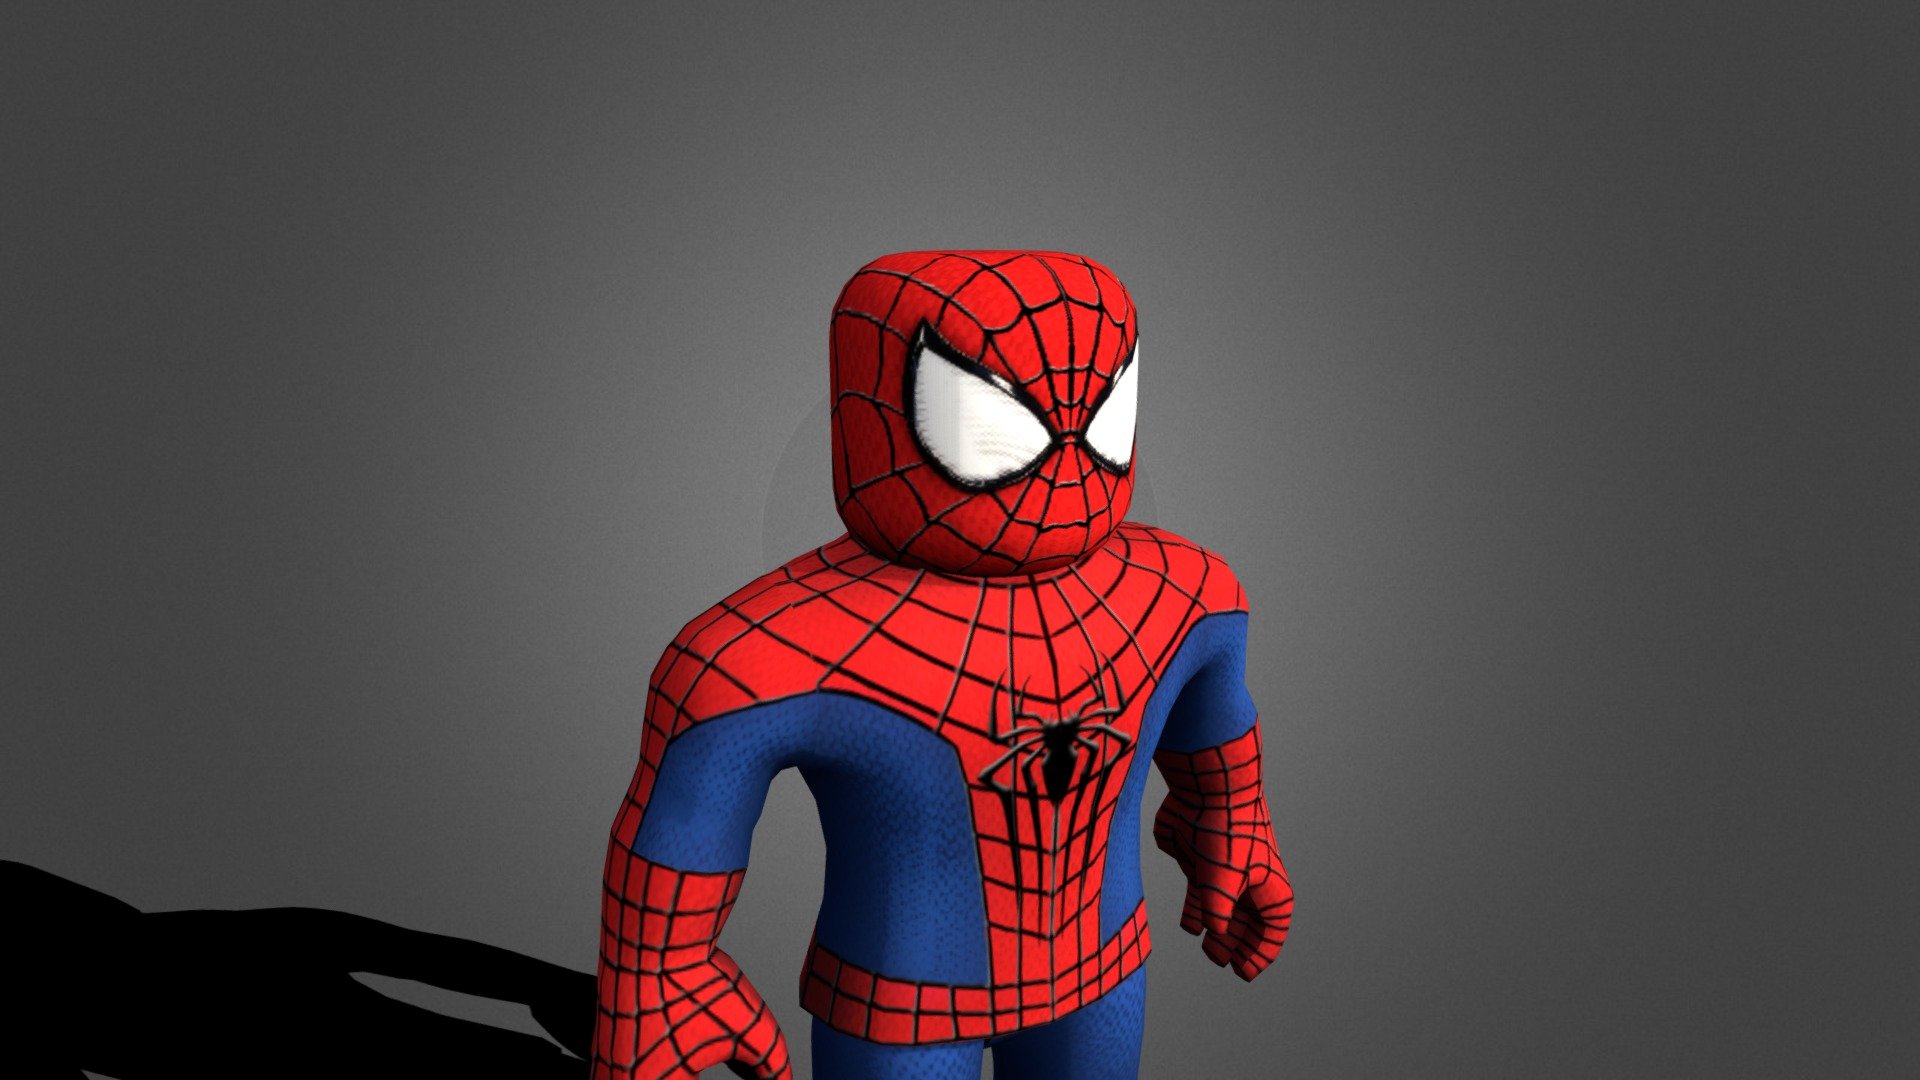 Bạn là fan của Spiderman? Tải model Spiderman cho Roblox miễn phí và trang bị cho nhân vật của bạn bộ trang phục siêu anh hùng đầy mạnh mẽ. Với những tính năng tuyệt vời đang chờ bạn, hãy chuẩn bị sẵn sàng để nhập vai và trải nghiệm trở thành Spiderman thực thụ.